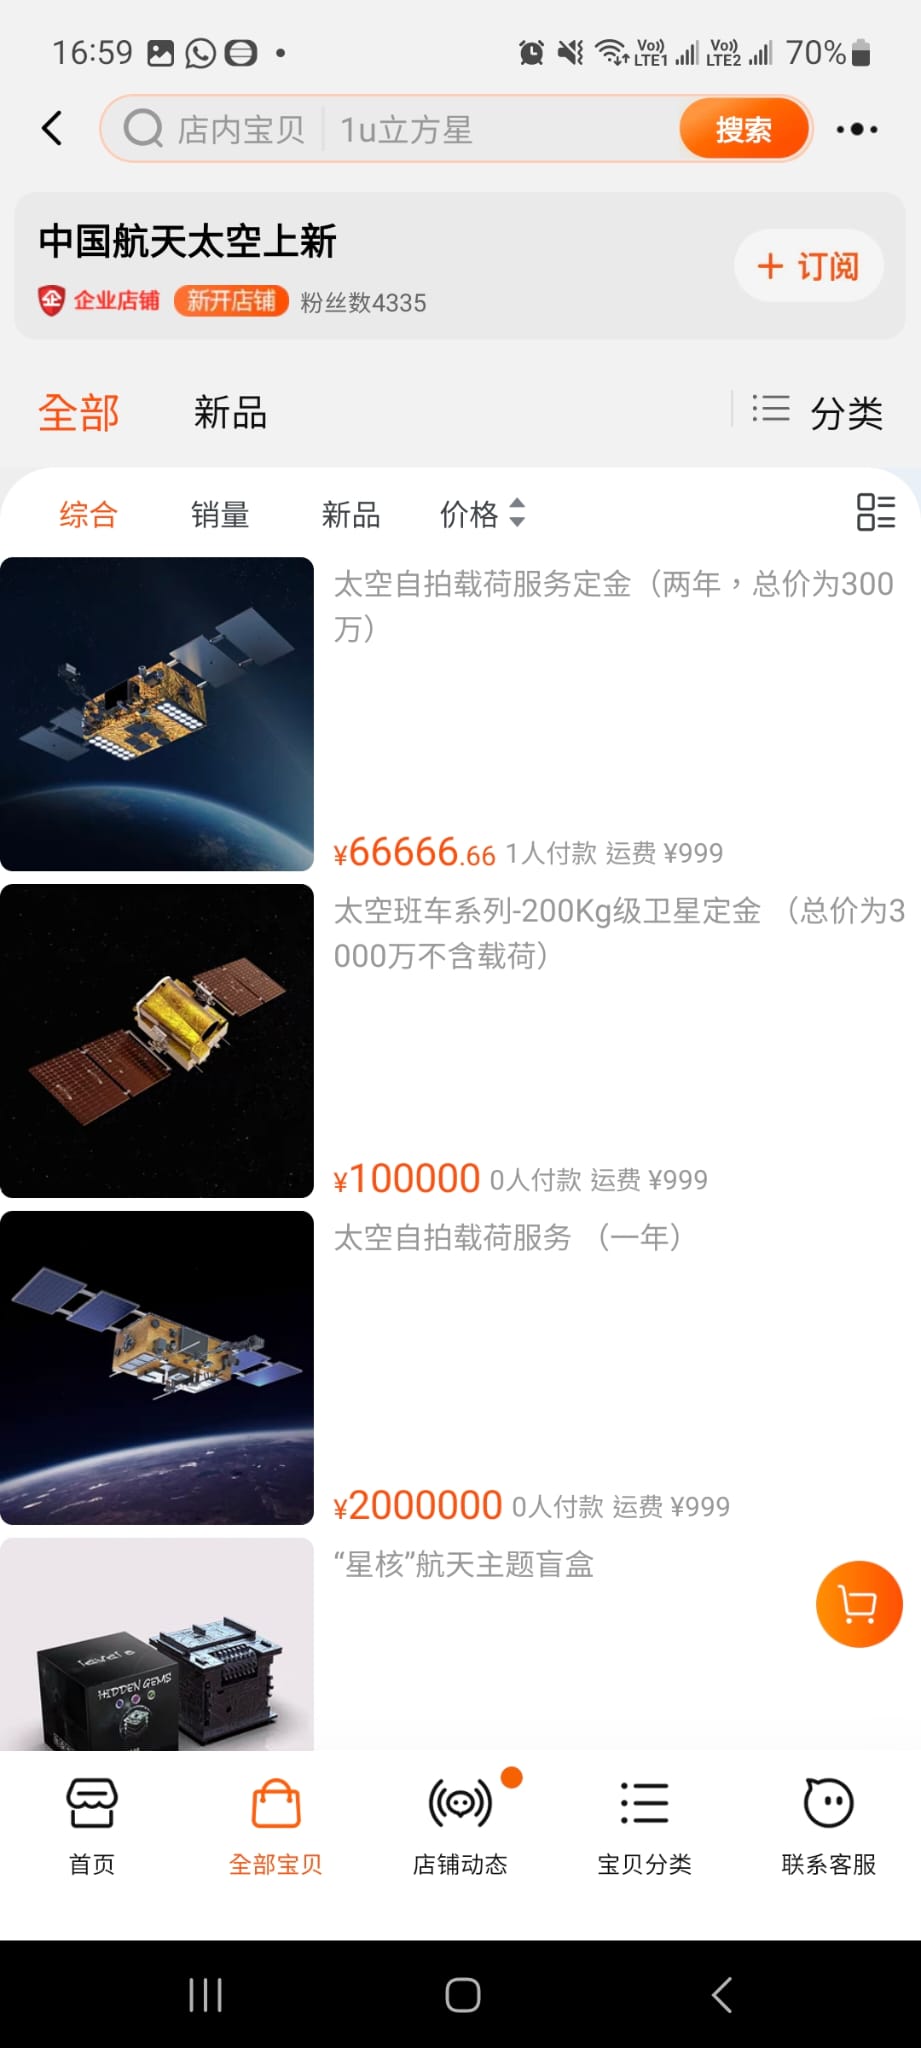 中國航天太空上新淘寶的店舖。